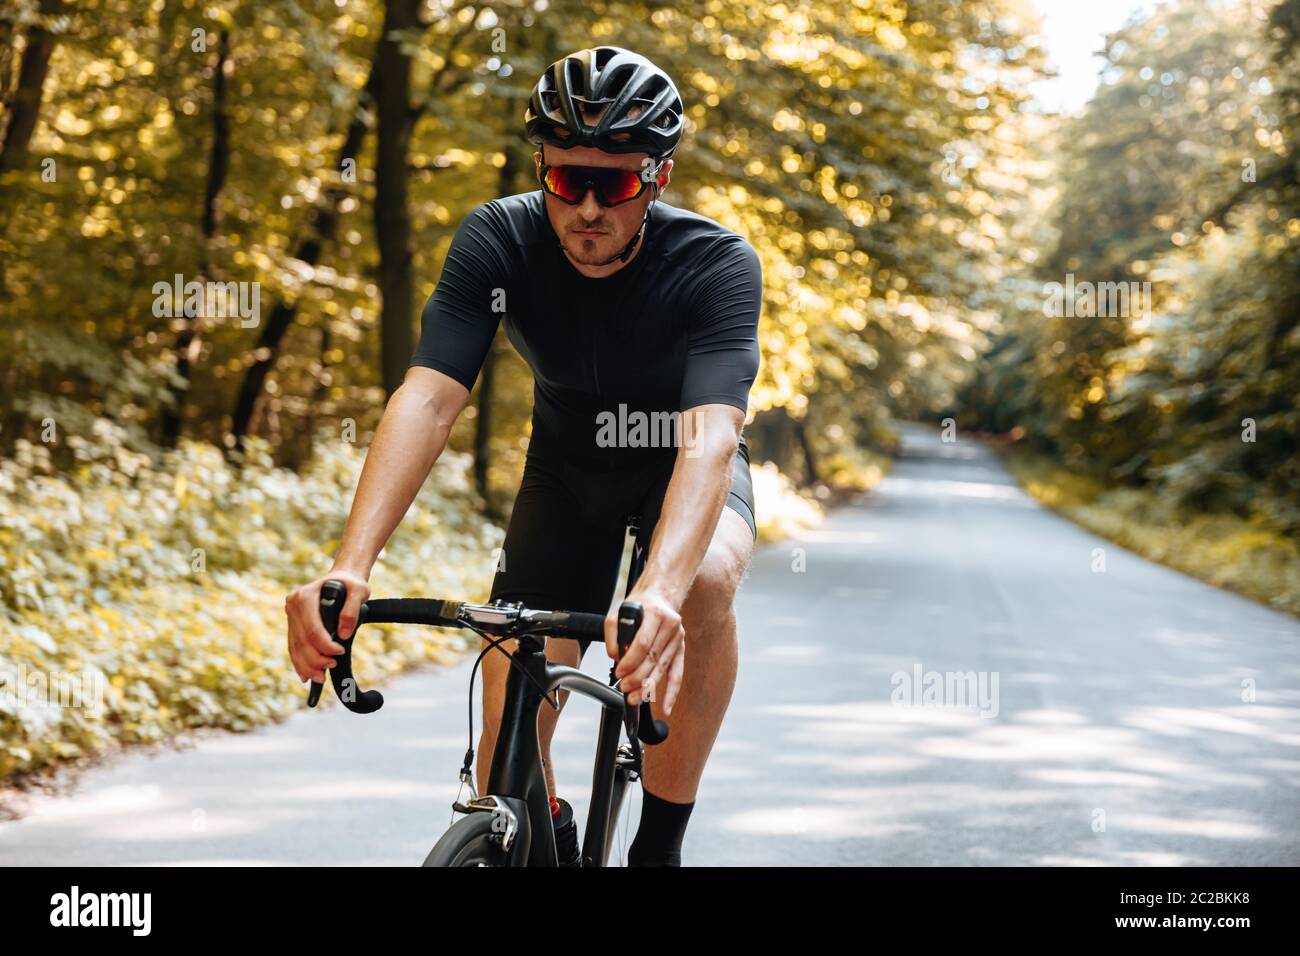 Homme barbu avec la forme du corps athlétique portant des vêtements de  sport et des lunettes à miroir, faisant du vélo dans la forêt verte.  Concept de frv actif et sain Photo